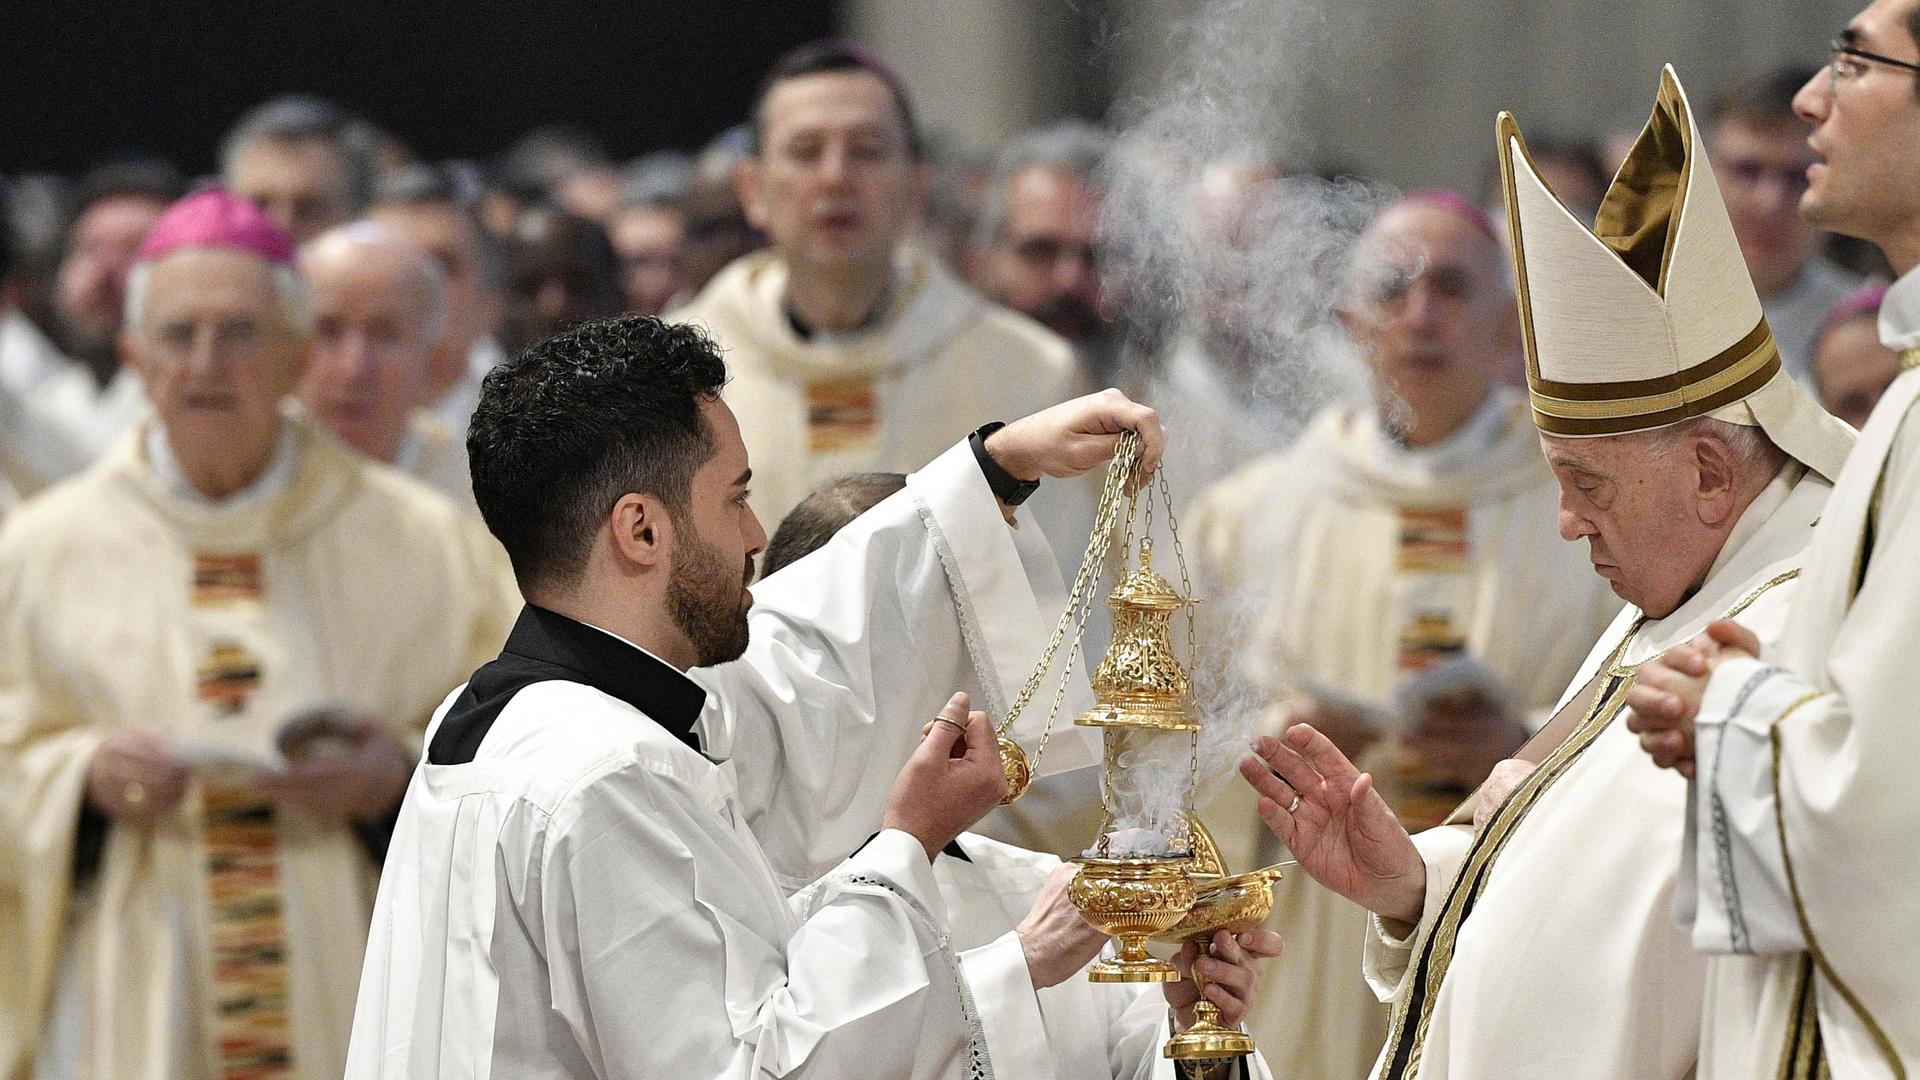 Papst Franziskus feiert mit anderen Priestern einen Ostern-Gottesdienst. Ein Priester hält ein Gefäß mit Weihrauch.